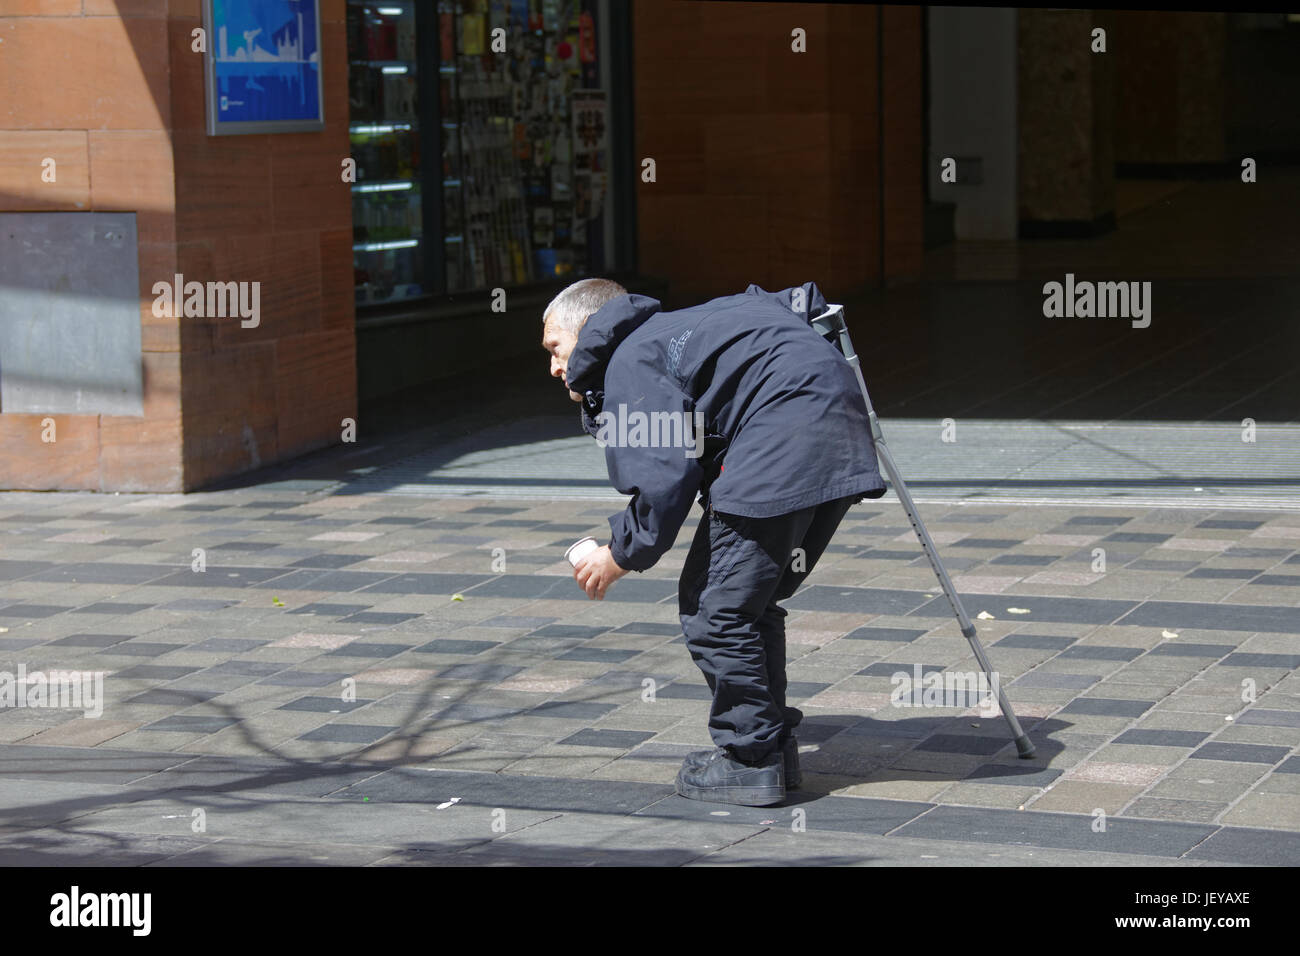 Chômeur sans-abri mendiant infirme handicapés retour à la maladie et bâton de marche de travers avec cuvette pour demander de l'argent sur la rue Banque D'Images